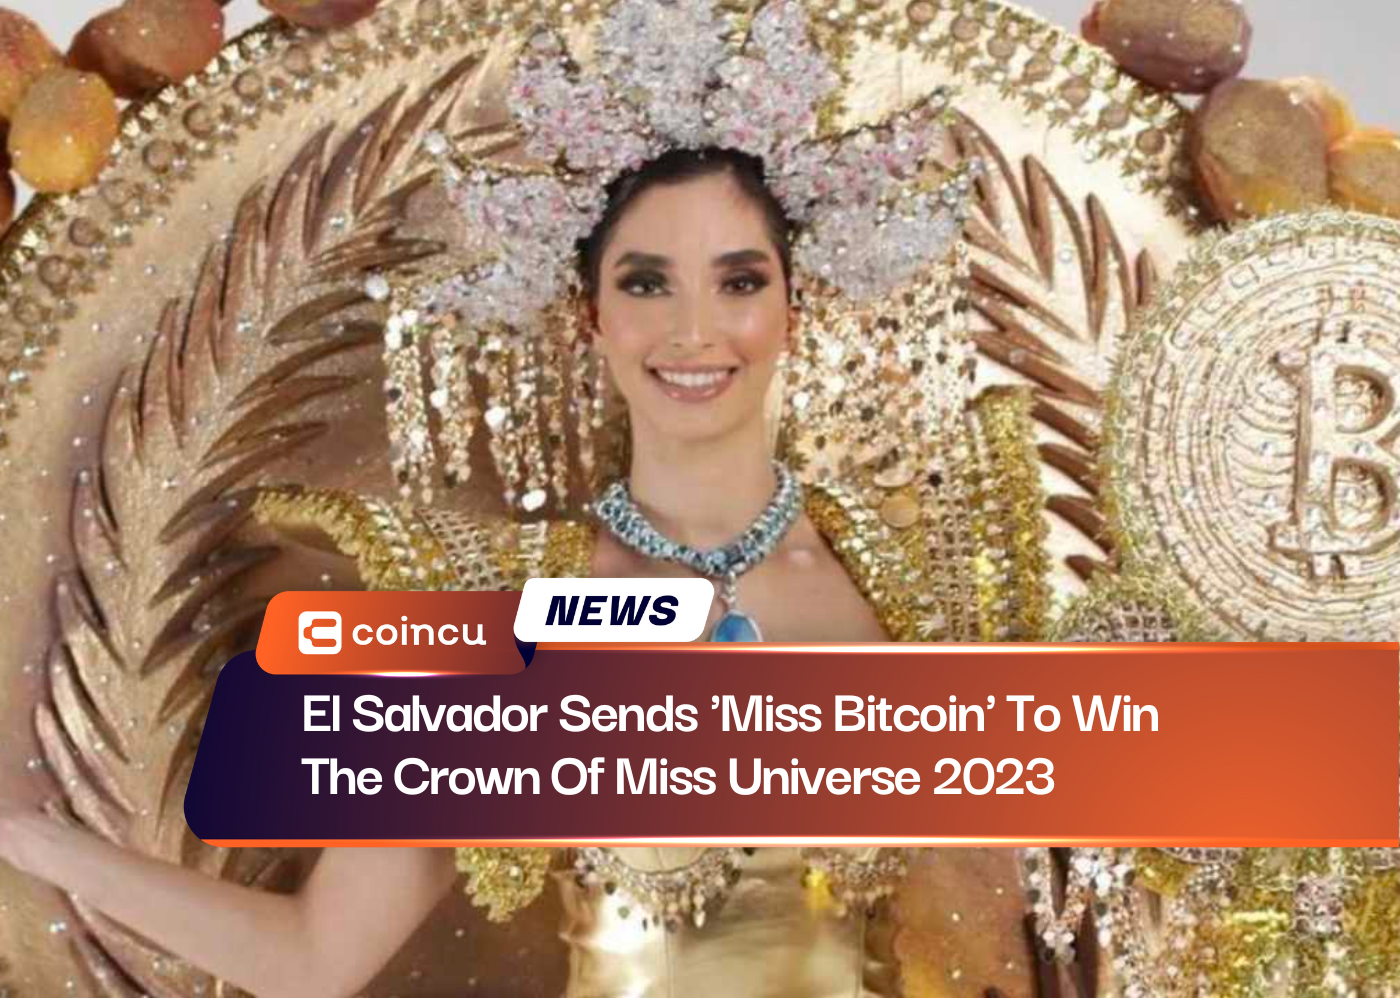 El Salvador envoie « Miss Bitcoin » pour remporter la couronne de Miss Univers 2023